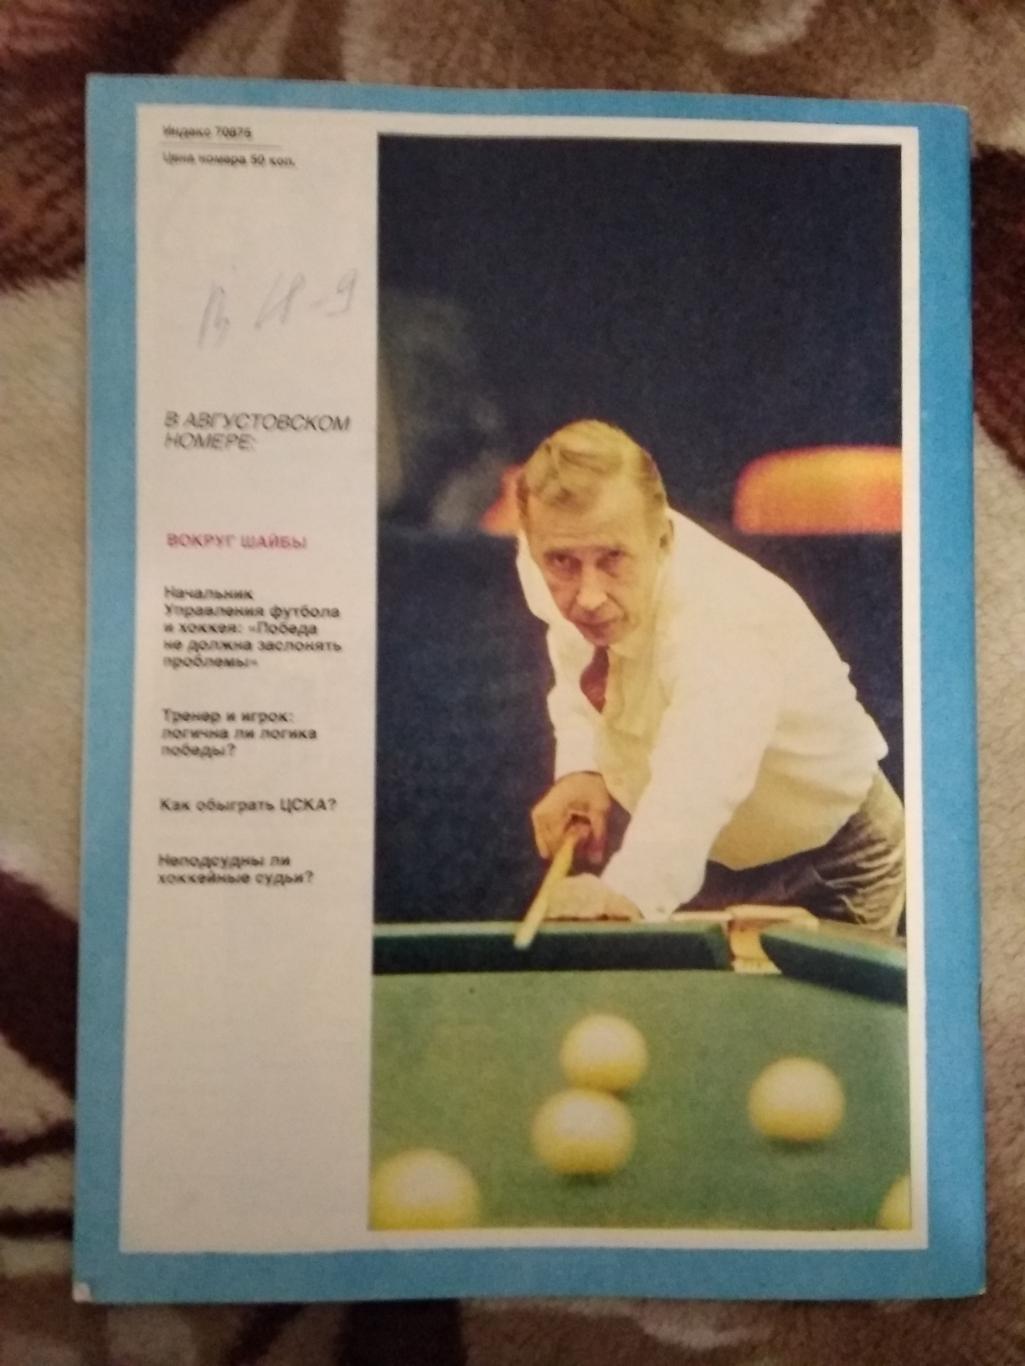 Журнал.Спортивные игры № 7 1989 г. 1